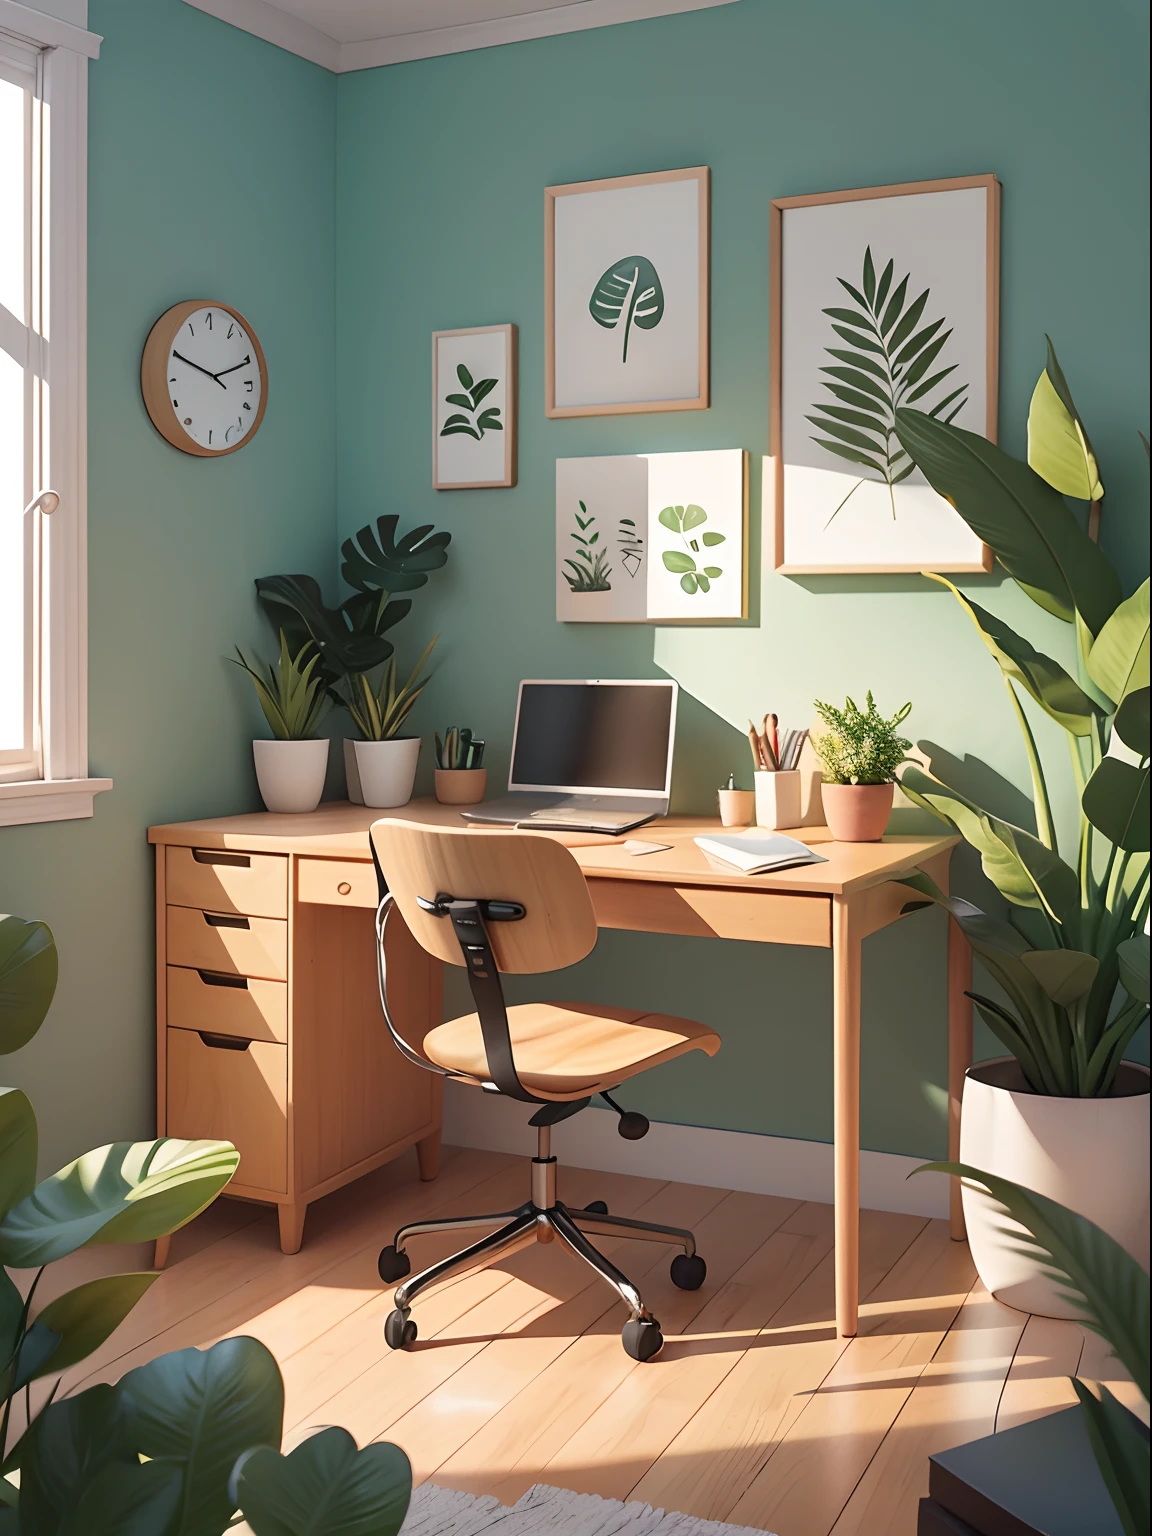 Ilustración de Office dibujada en estilo de dibujos animados. Añade elementos naturales, Como plantas y flores, Y utilice una paleta de colores suaves para crear una atmósfera relajante..